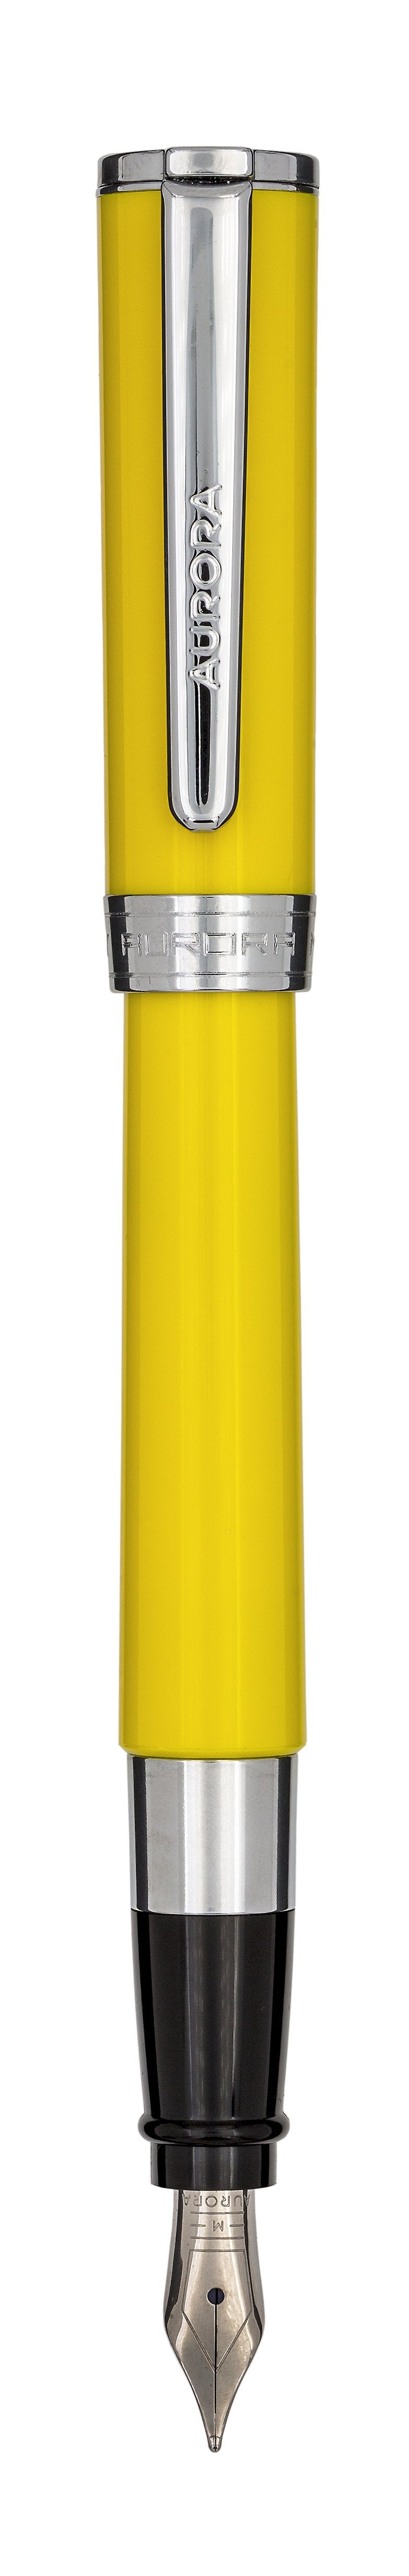 Aurora TU Resin Yellow with Chrome Trims Fountain Pen